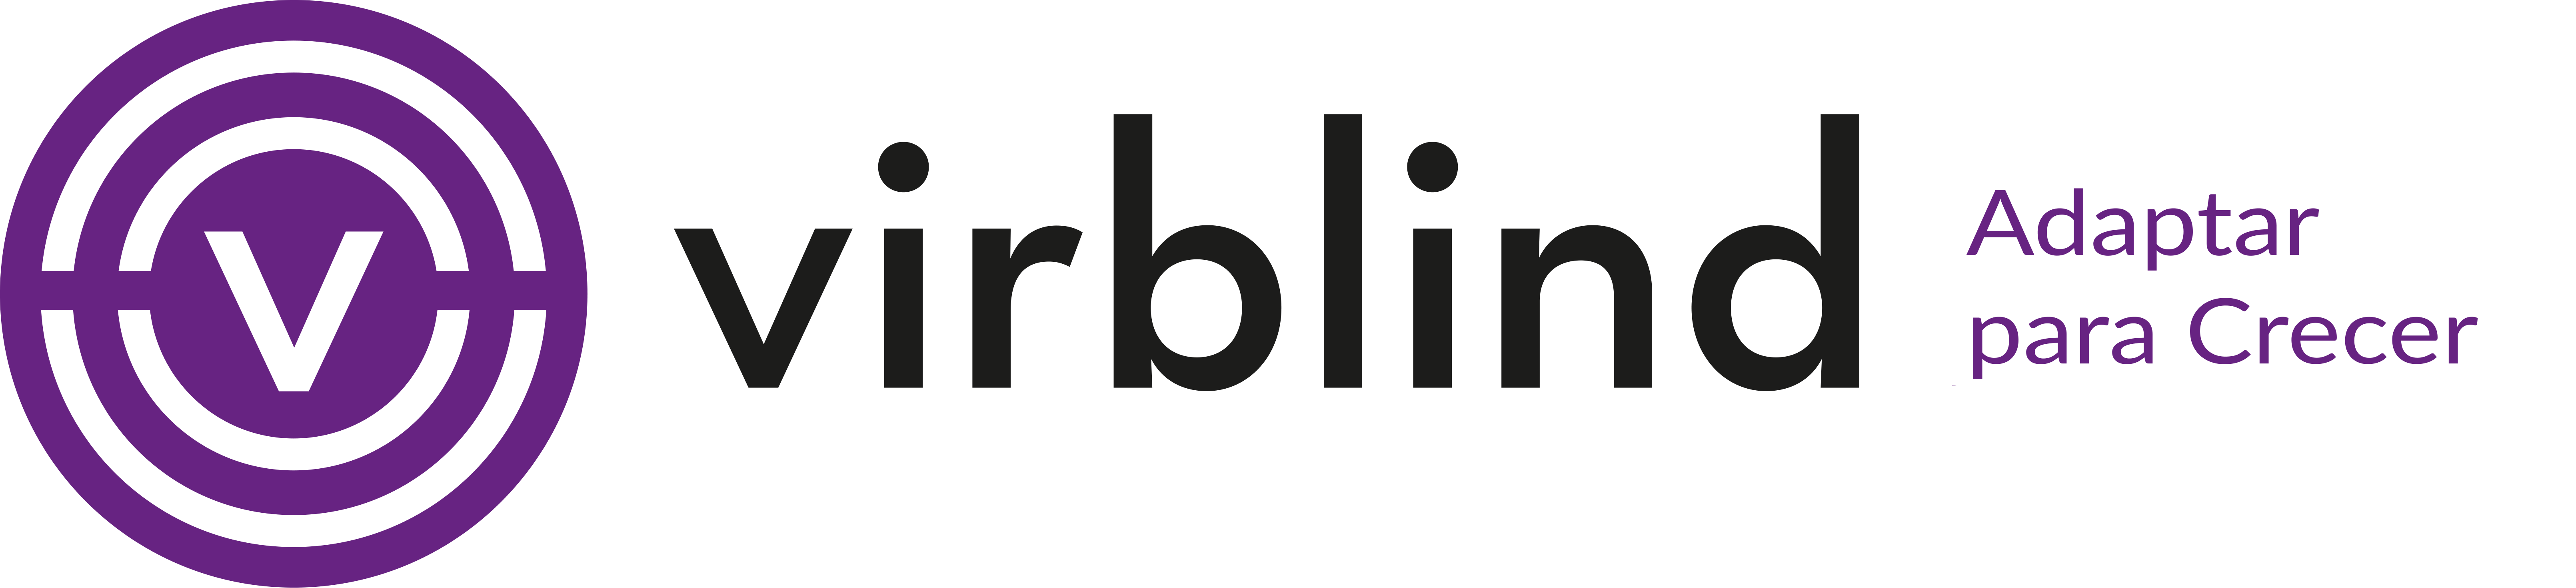 logotipo de Virblind con texto "te describimos la web"